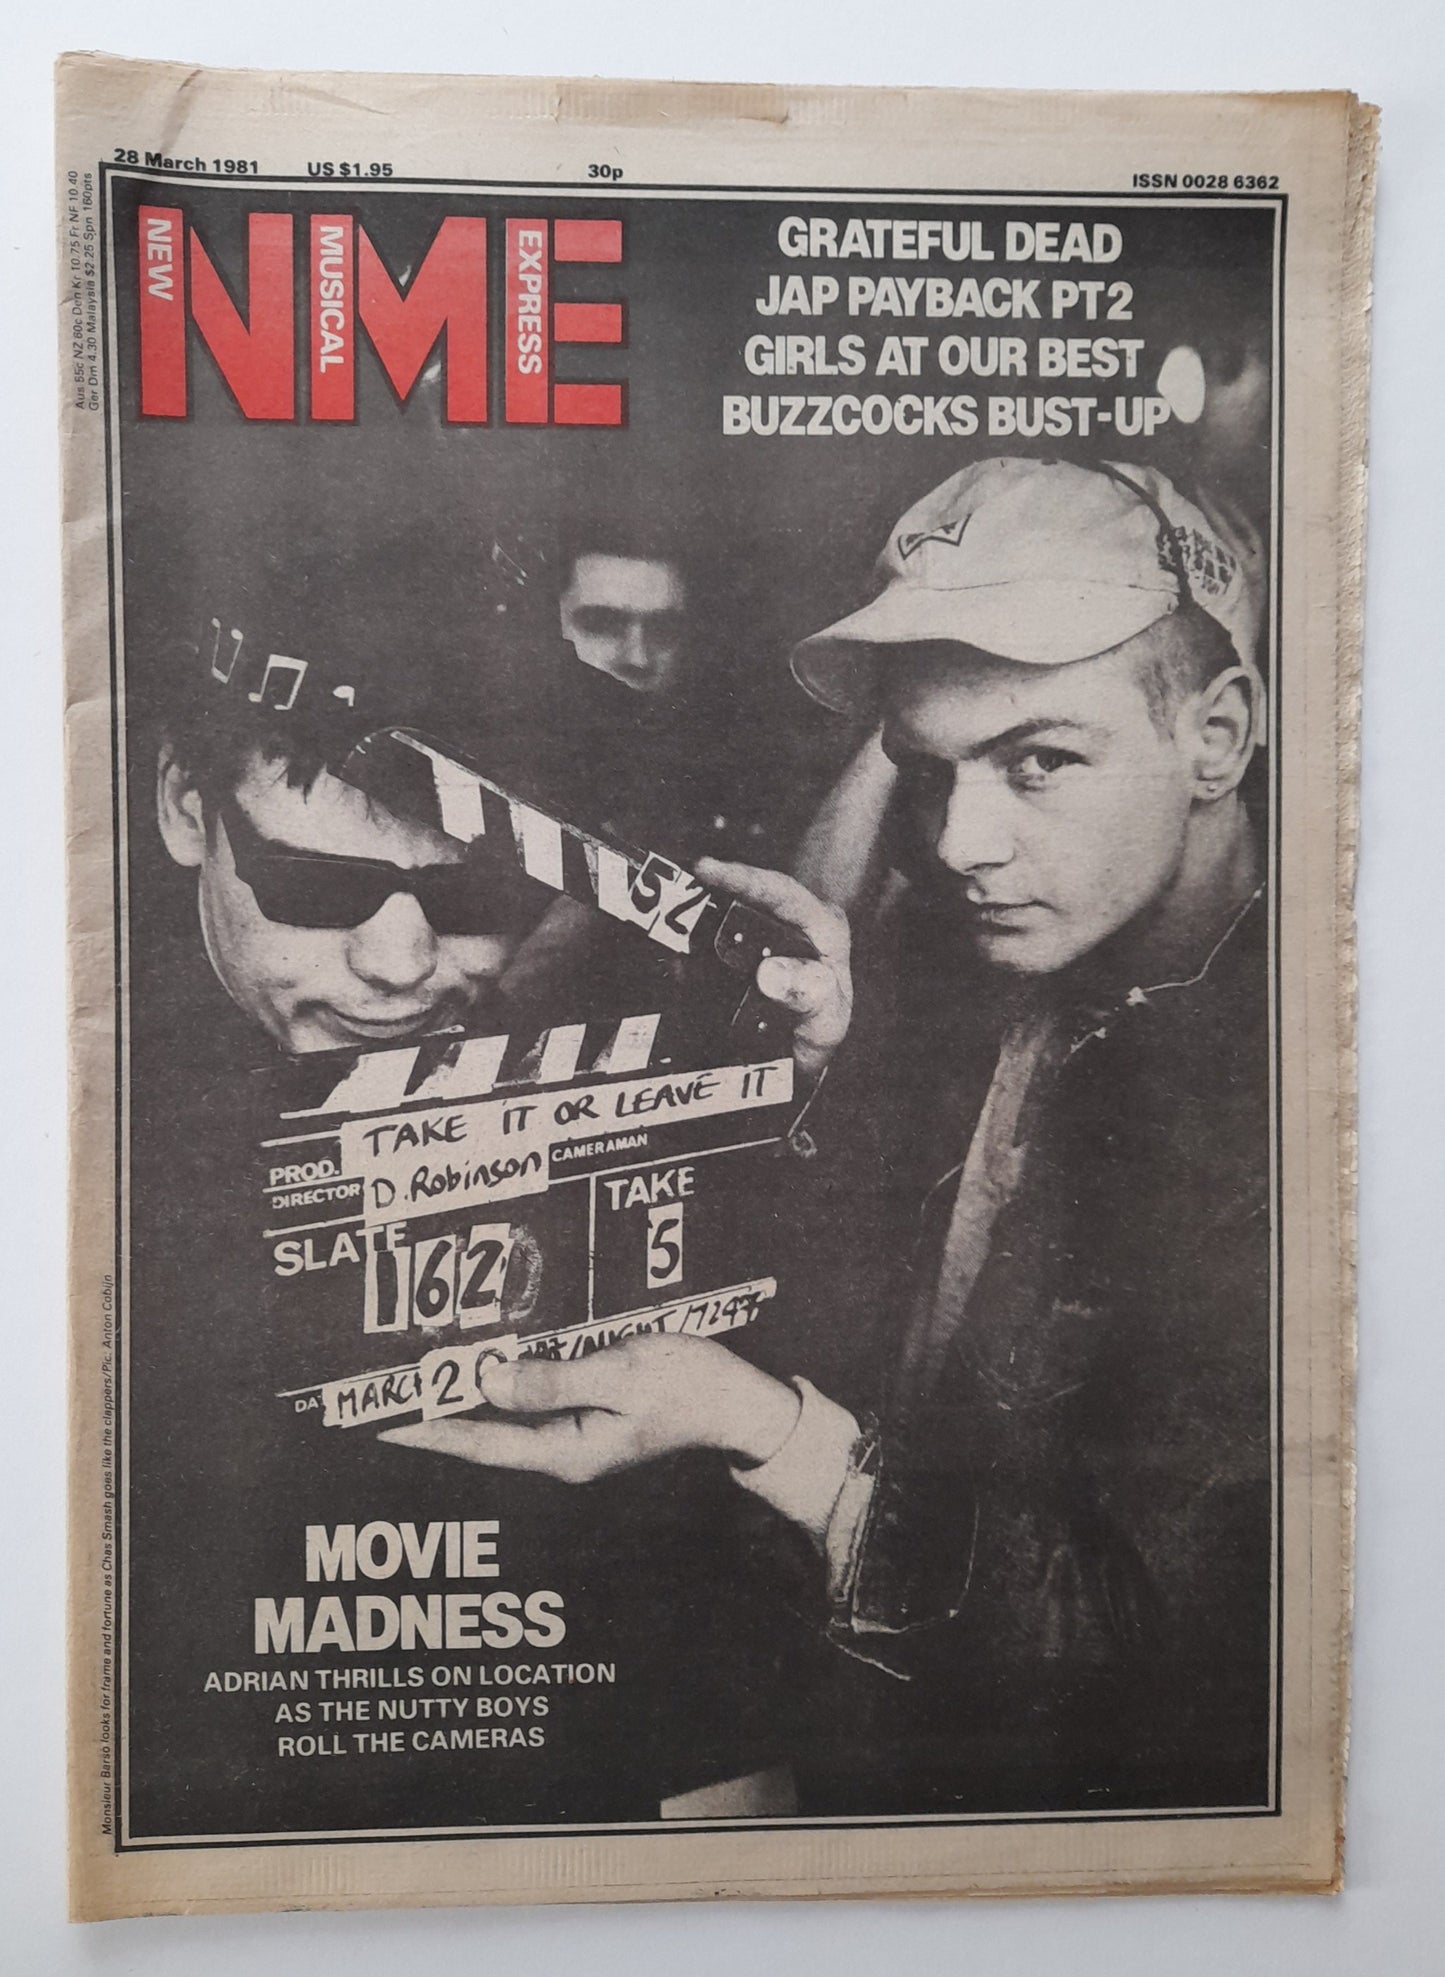 NME Magazine 28 March 1981 Madness, Grateful Dead, Buzzcocks